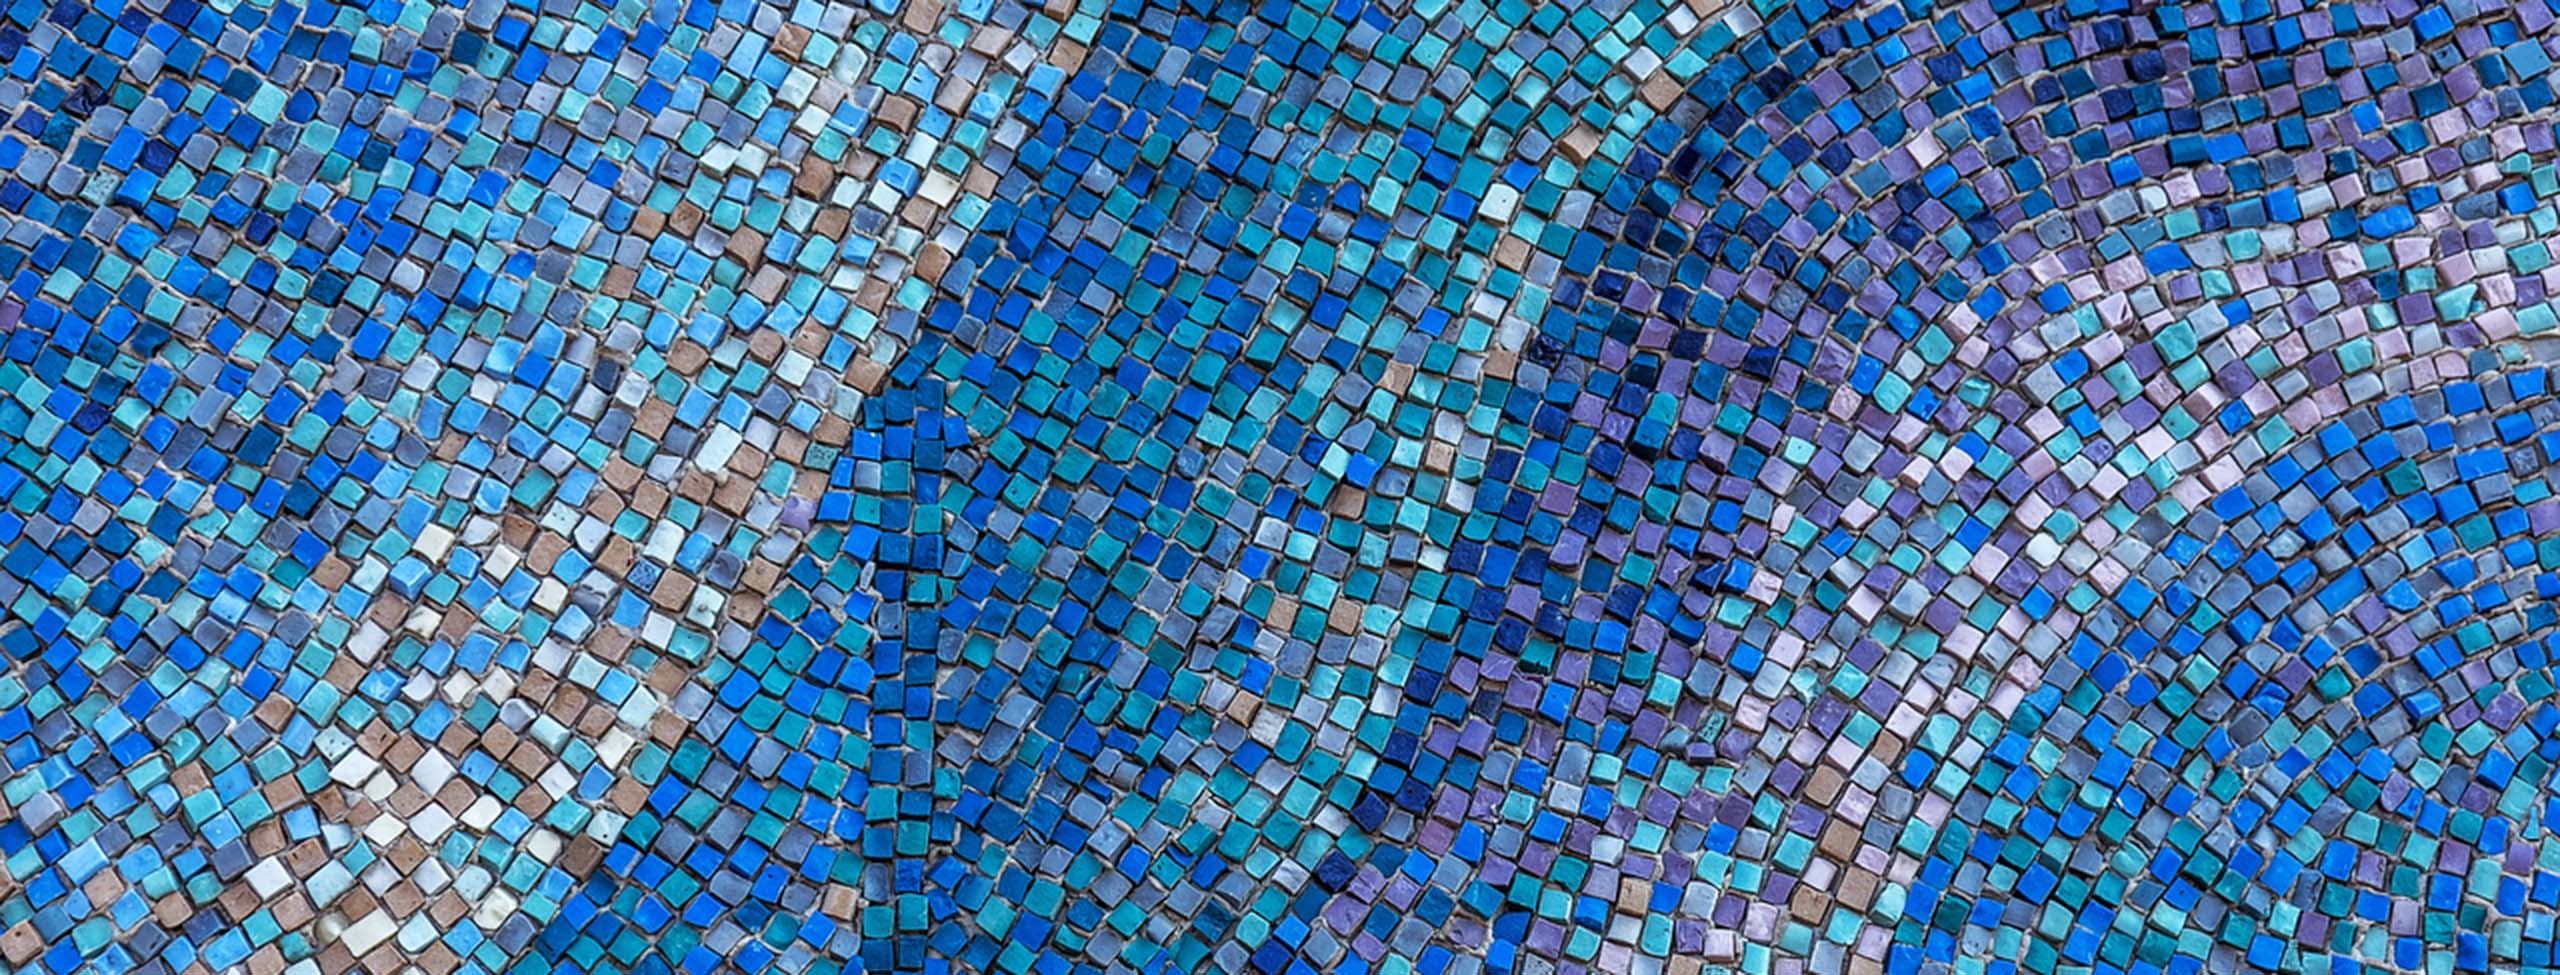 Abstract ceramic mosaic